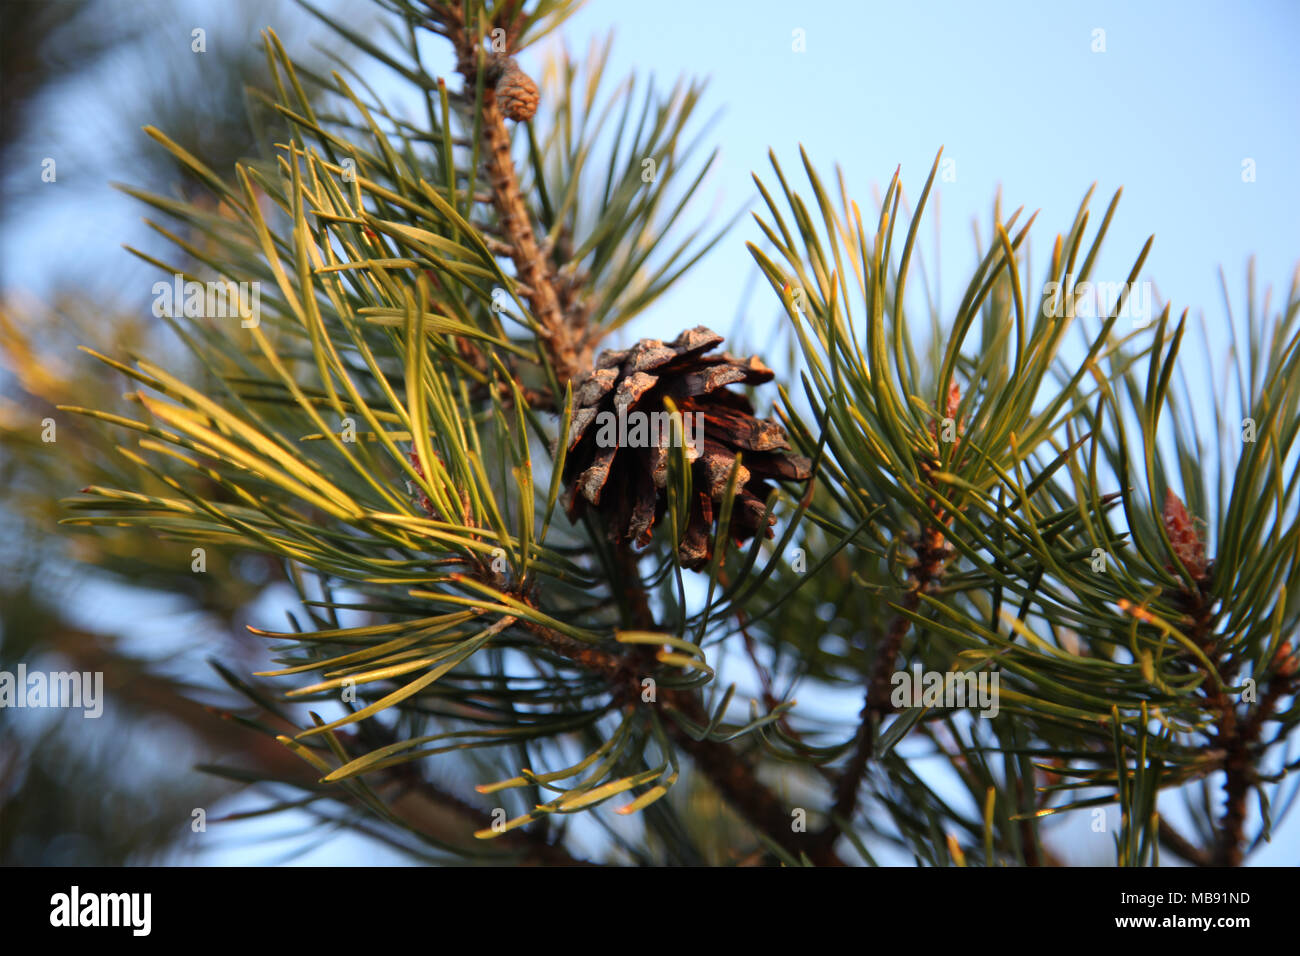 Ruissalo Island Pine cone Finland Stock Photo